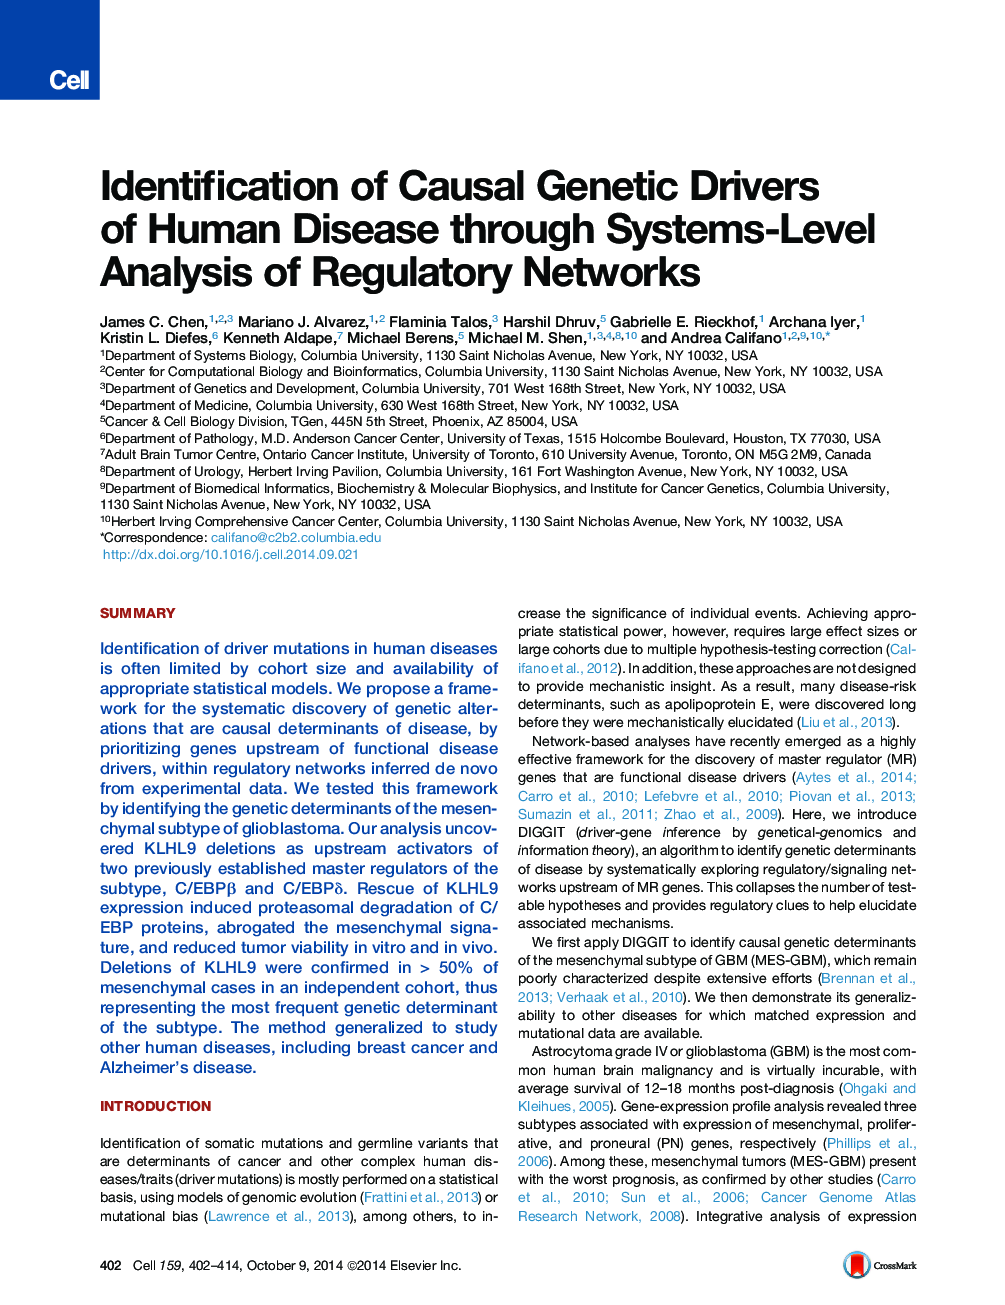 شناسایی رانندگان ژنتیک بیماری های انسانی از طریق تجزیه و تحلیل سطح شبکه در شبکه های نظارتی 